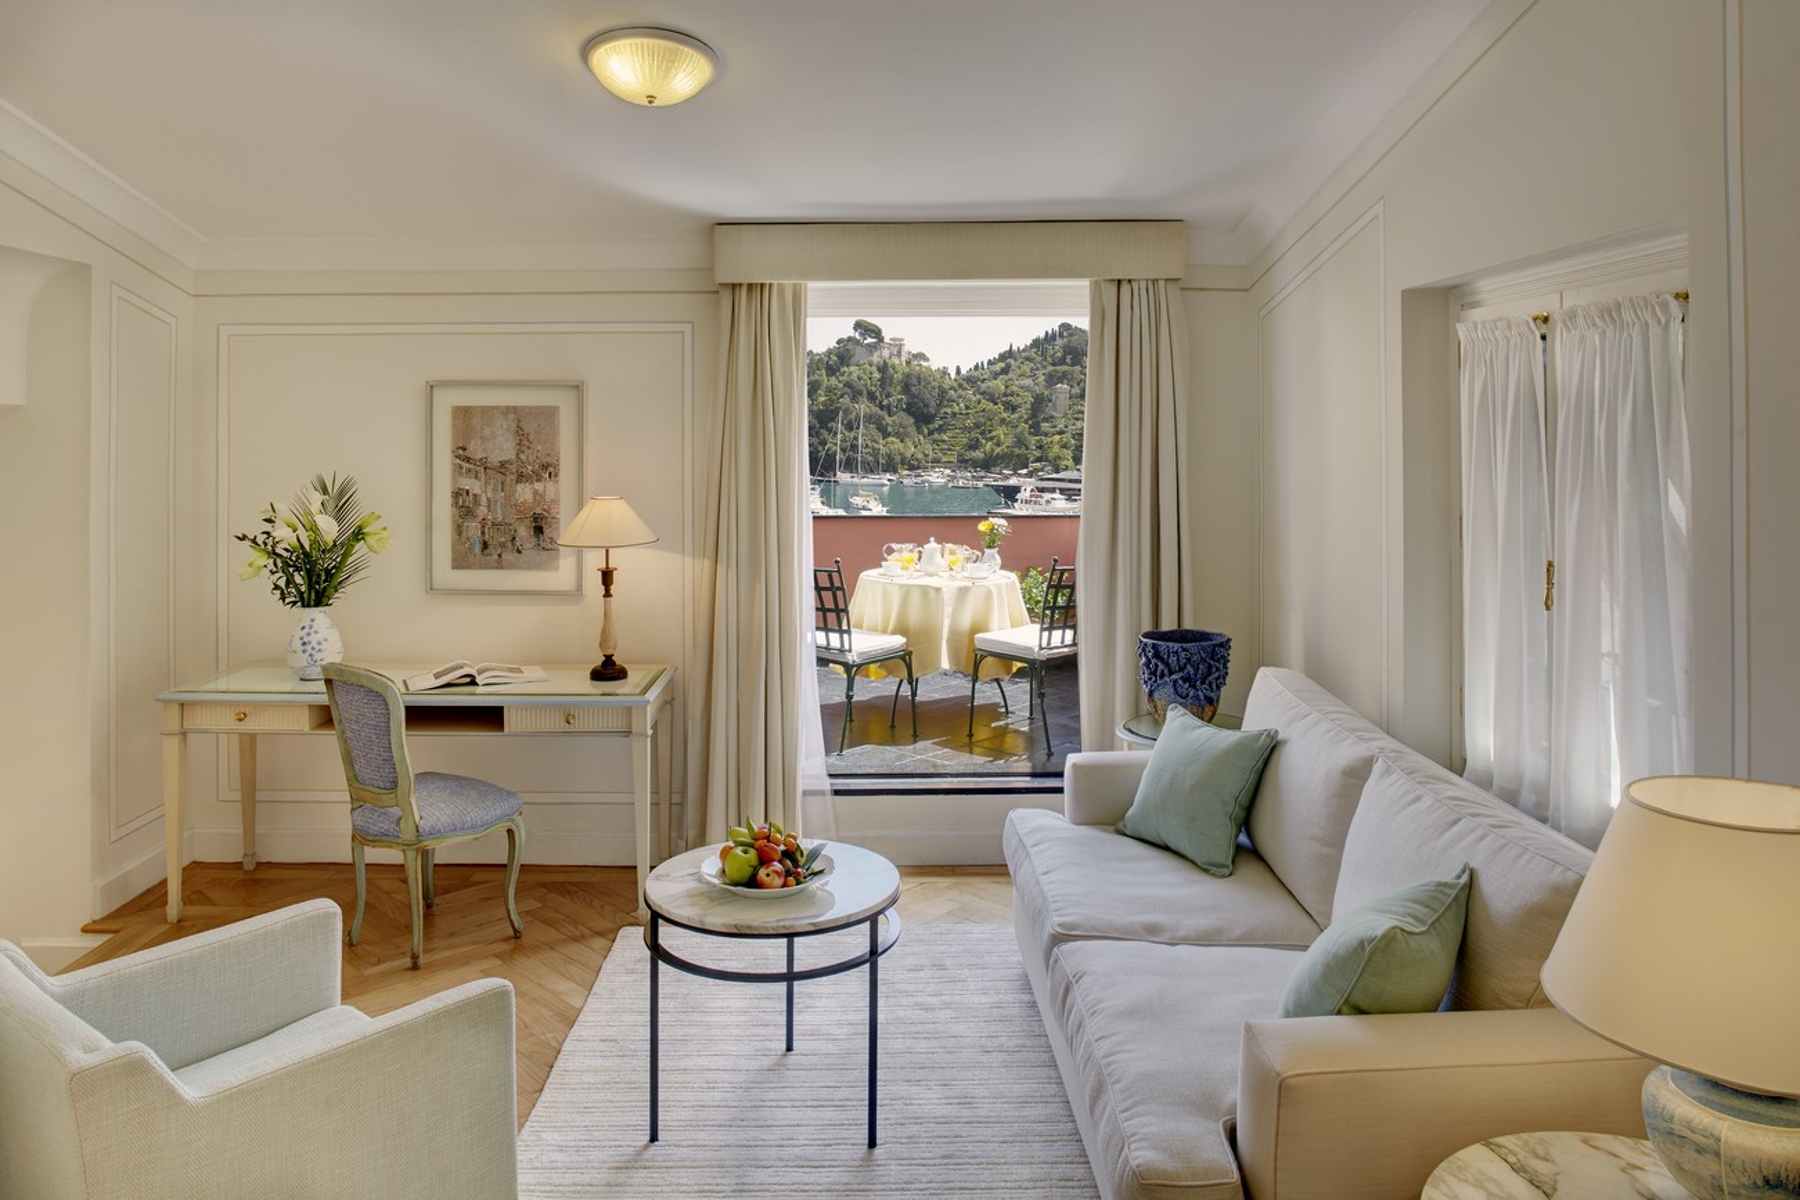 Inside the Ava Gardner Suite at Belmond Splendido Mare - The Hotel